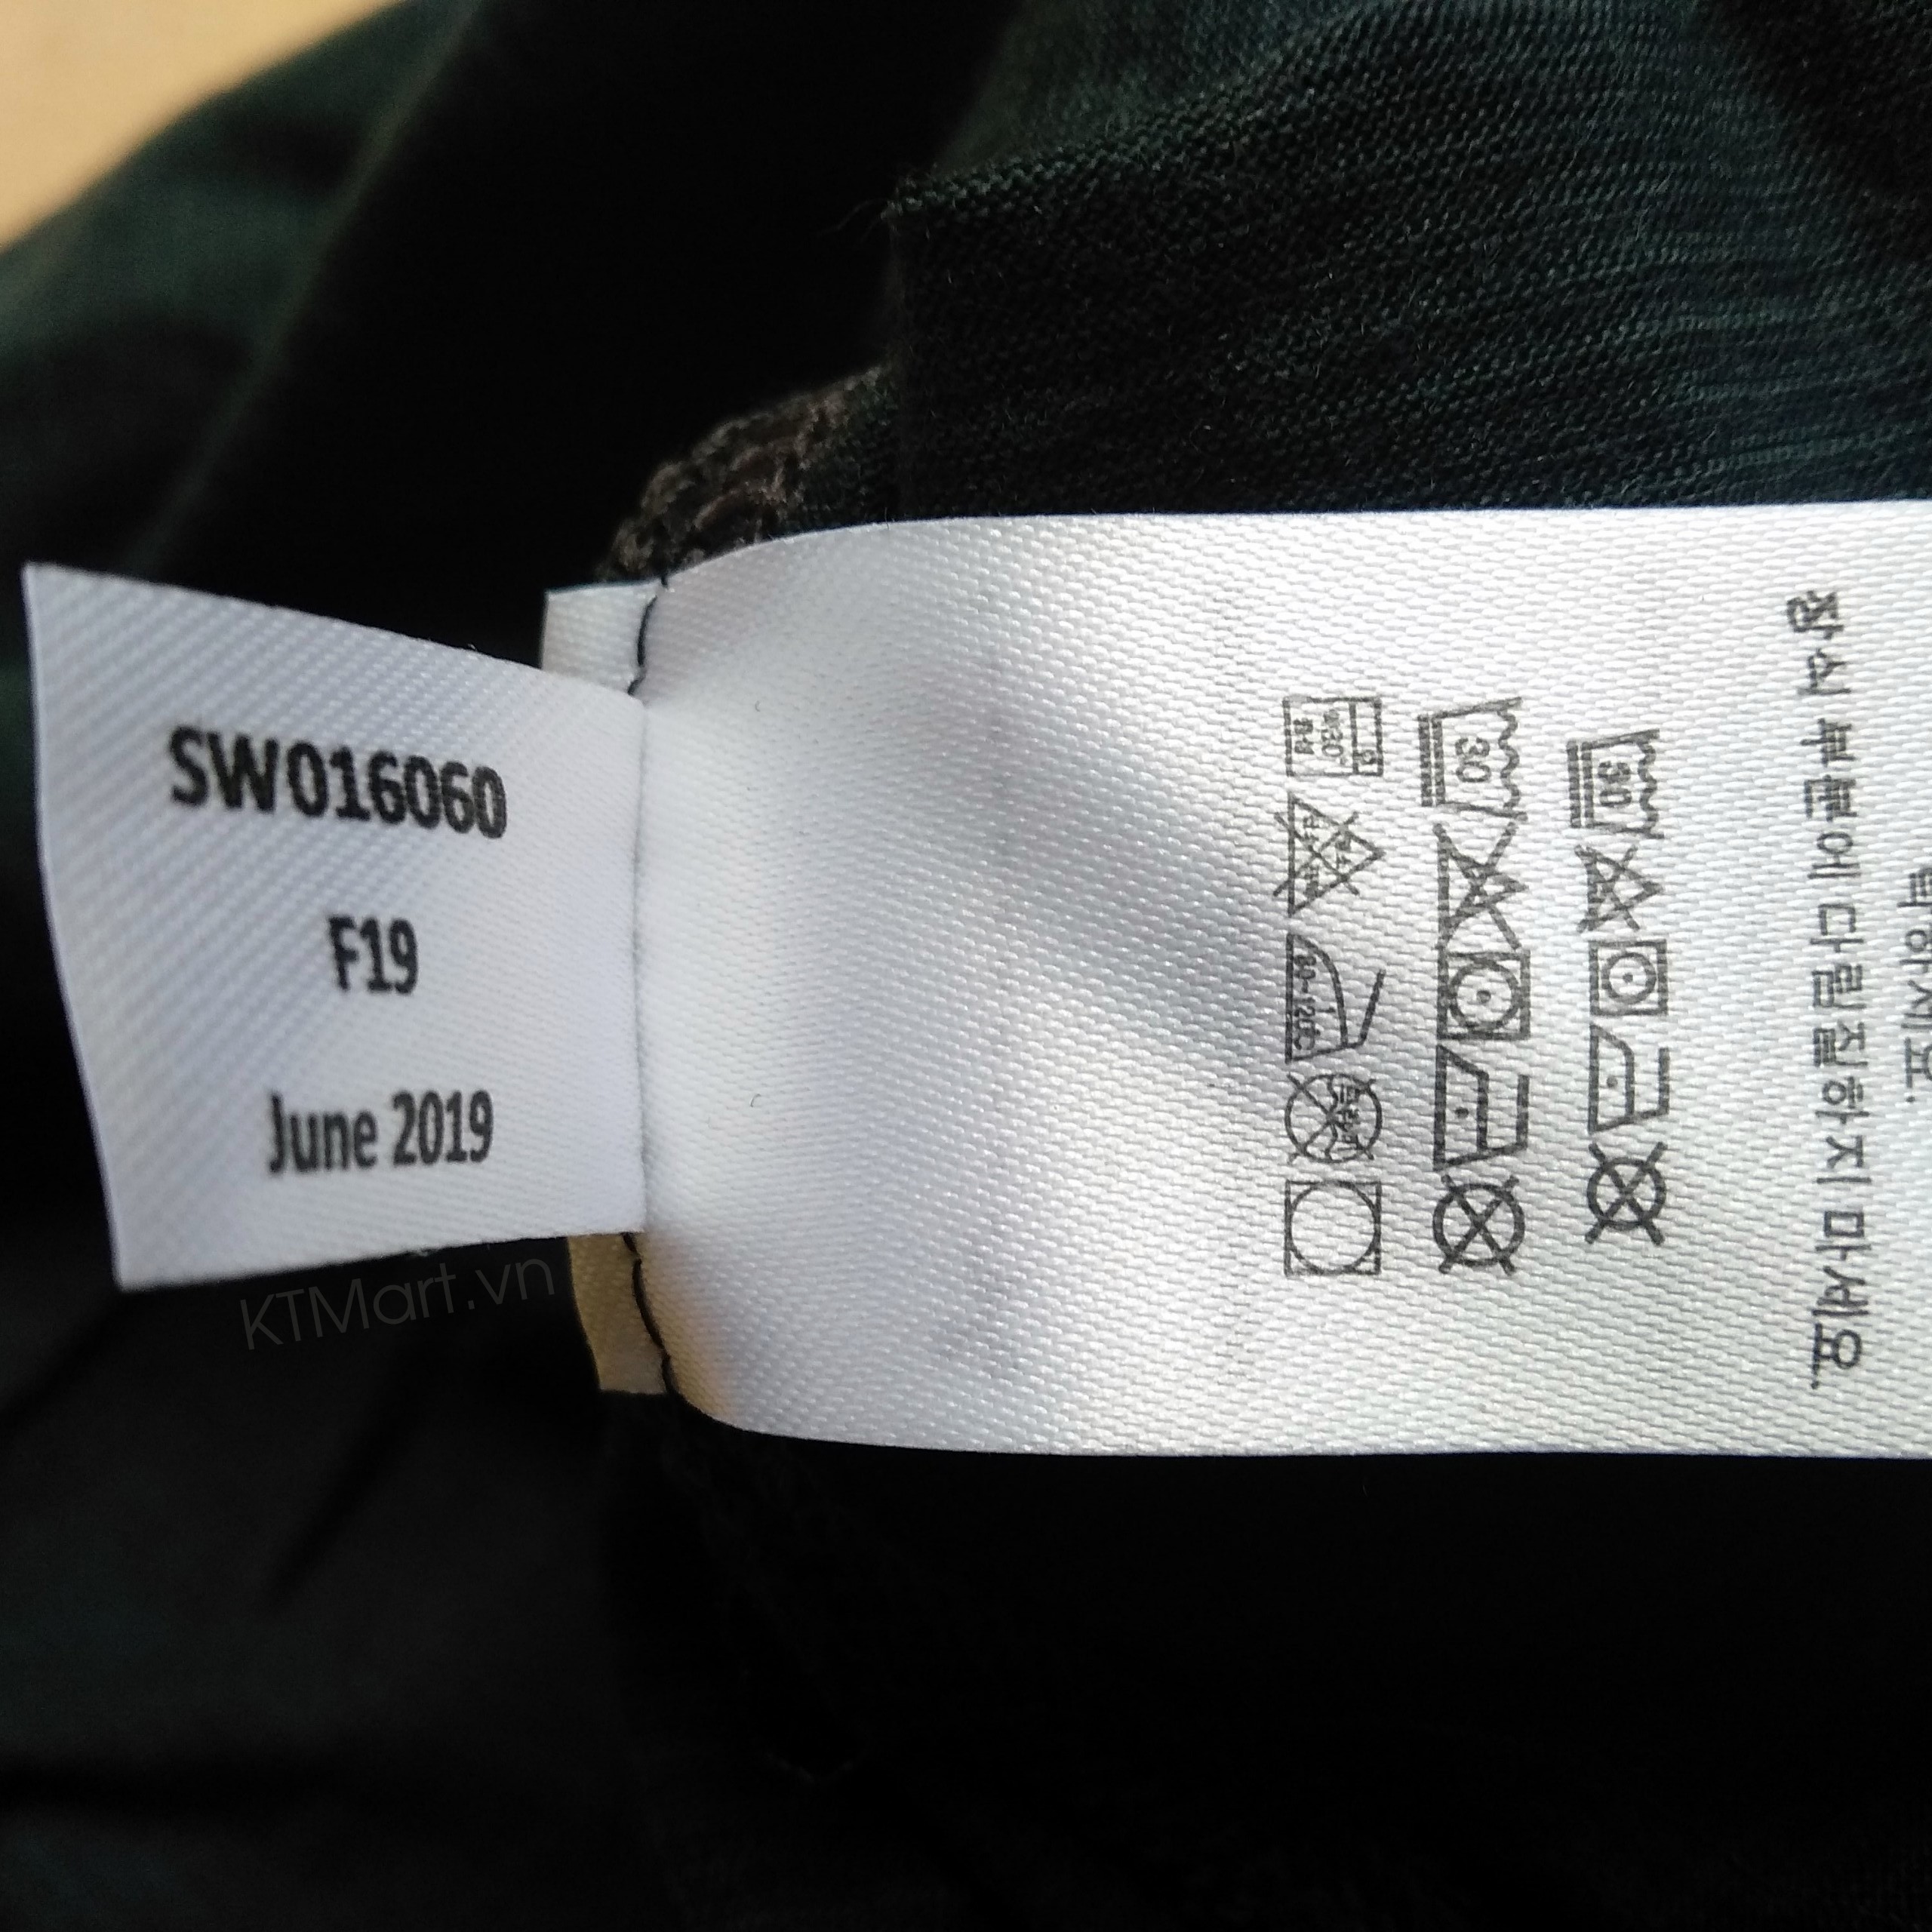 Smartwool Men’s Merino 150 Base Layer Micro Stripe Short Sleeve SW016060 Smartwool ktmart.vn 4